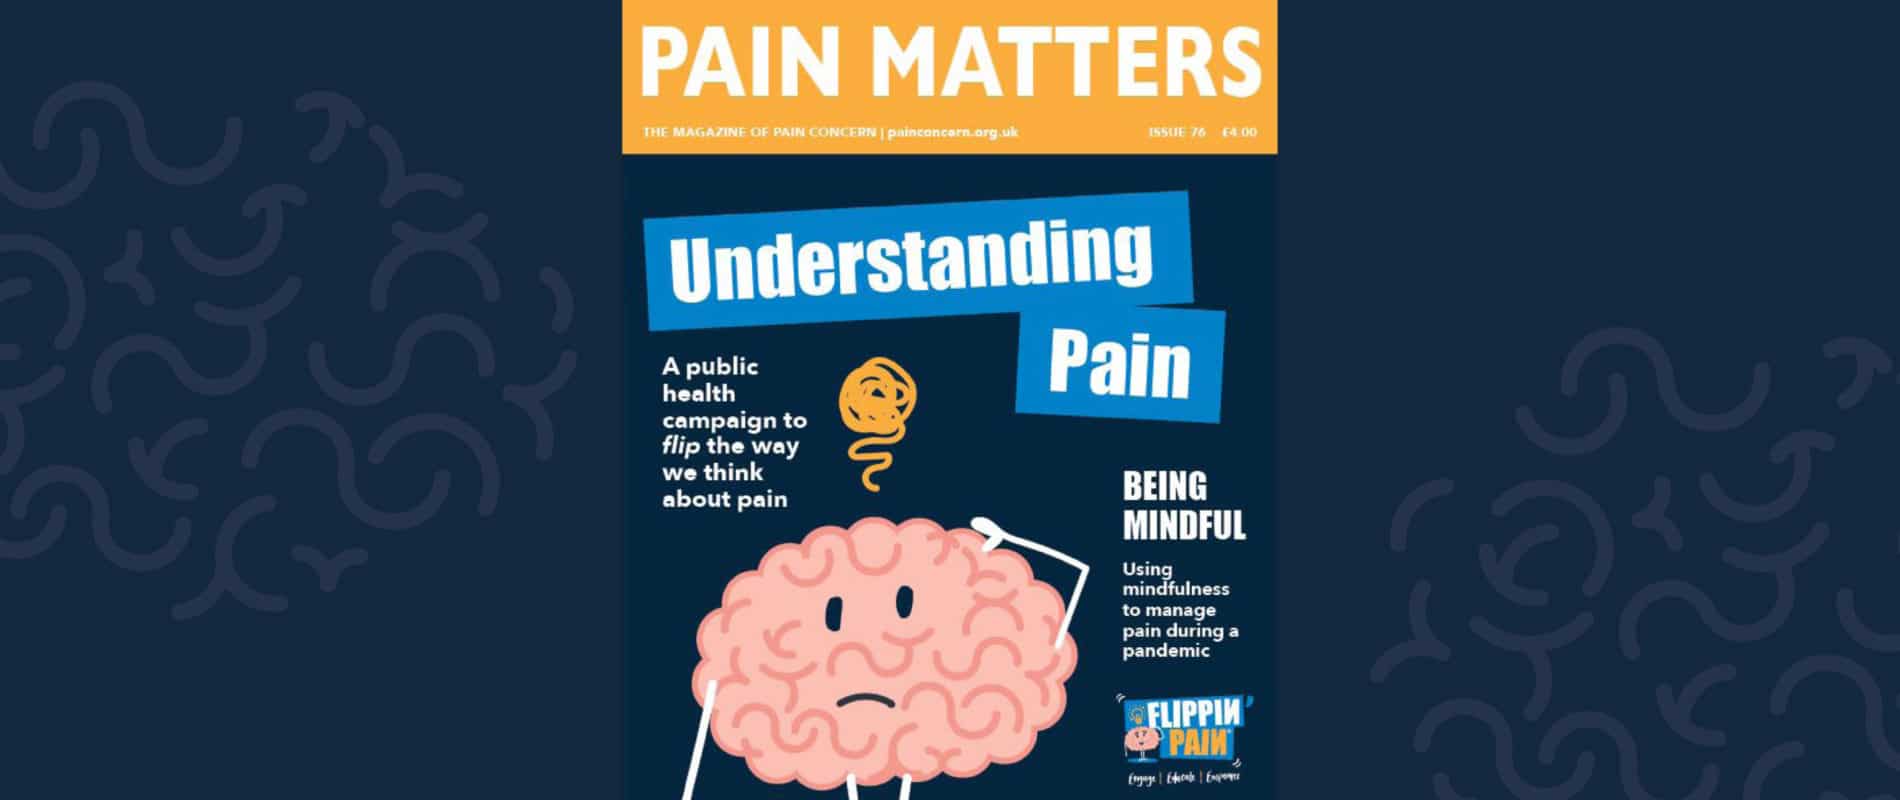 pain matters